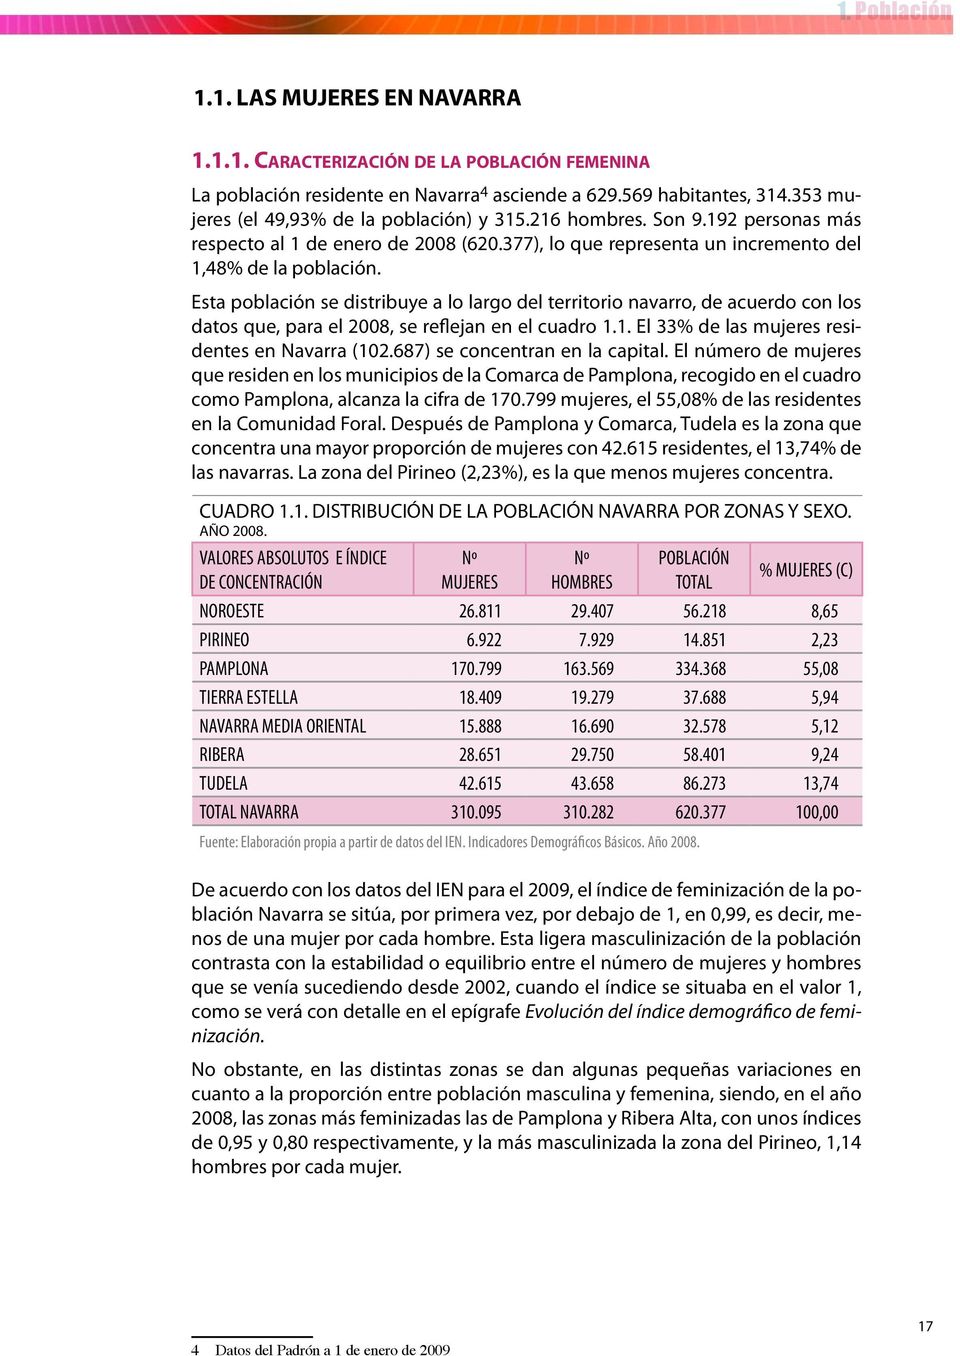 Esta población se distribuye a lo largo del territorio navarro, de acuerdo con los datos que, para el 2008, se reflejan en el cuadro 1.1. El 33% de las mujeres residentes en Navarra (102.